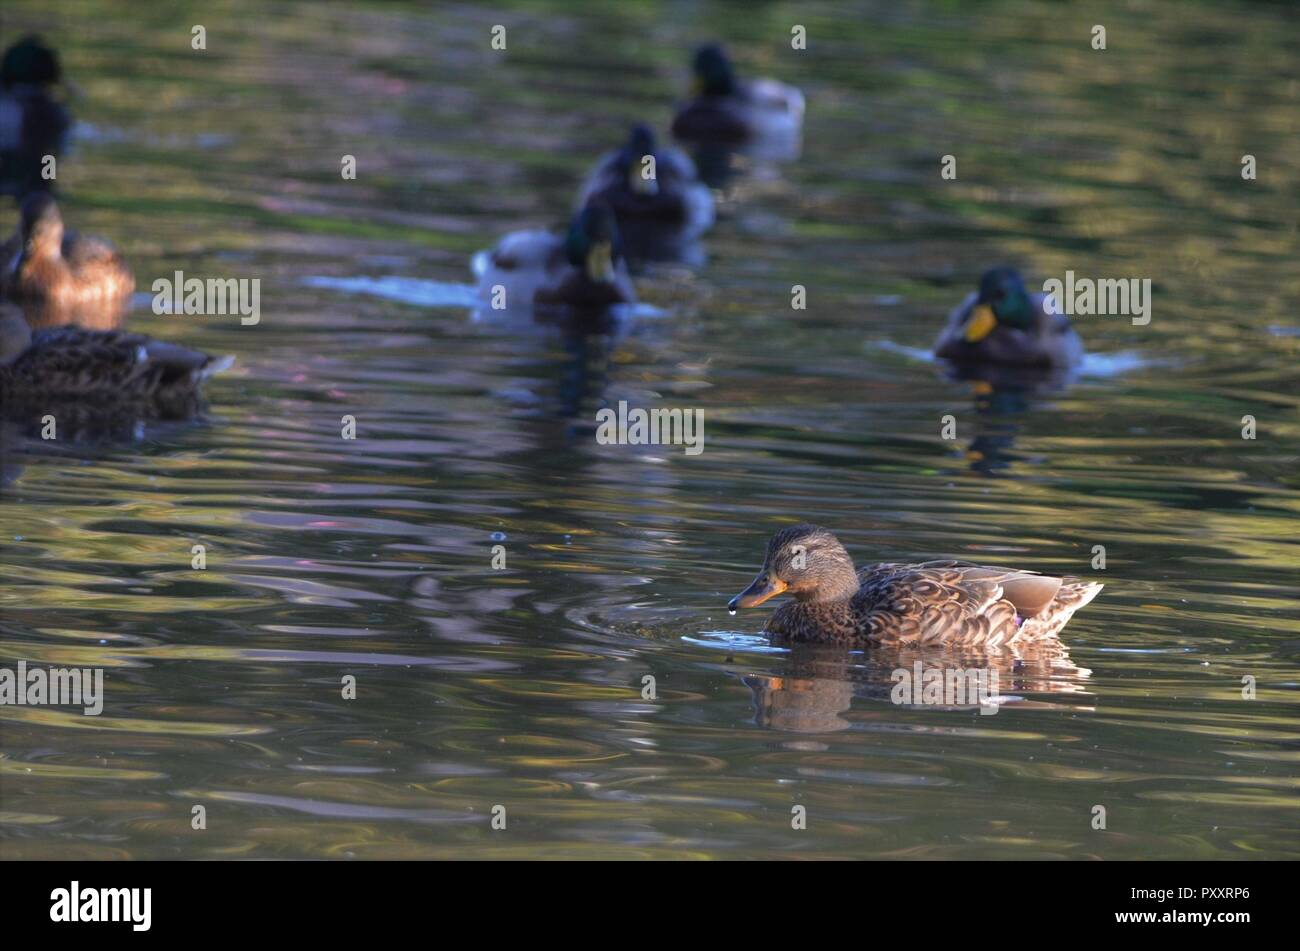 Piccolo gruppo di germani reali in un lago, marrone anatre in acqua catturata con la fotografia naturalistica Foto Stock